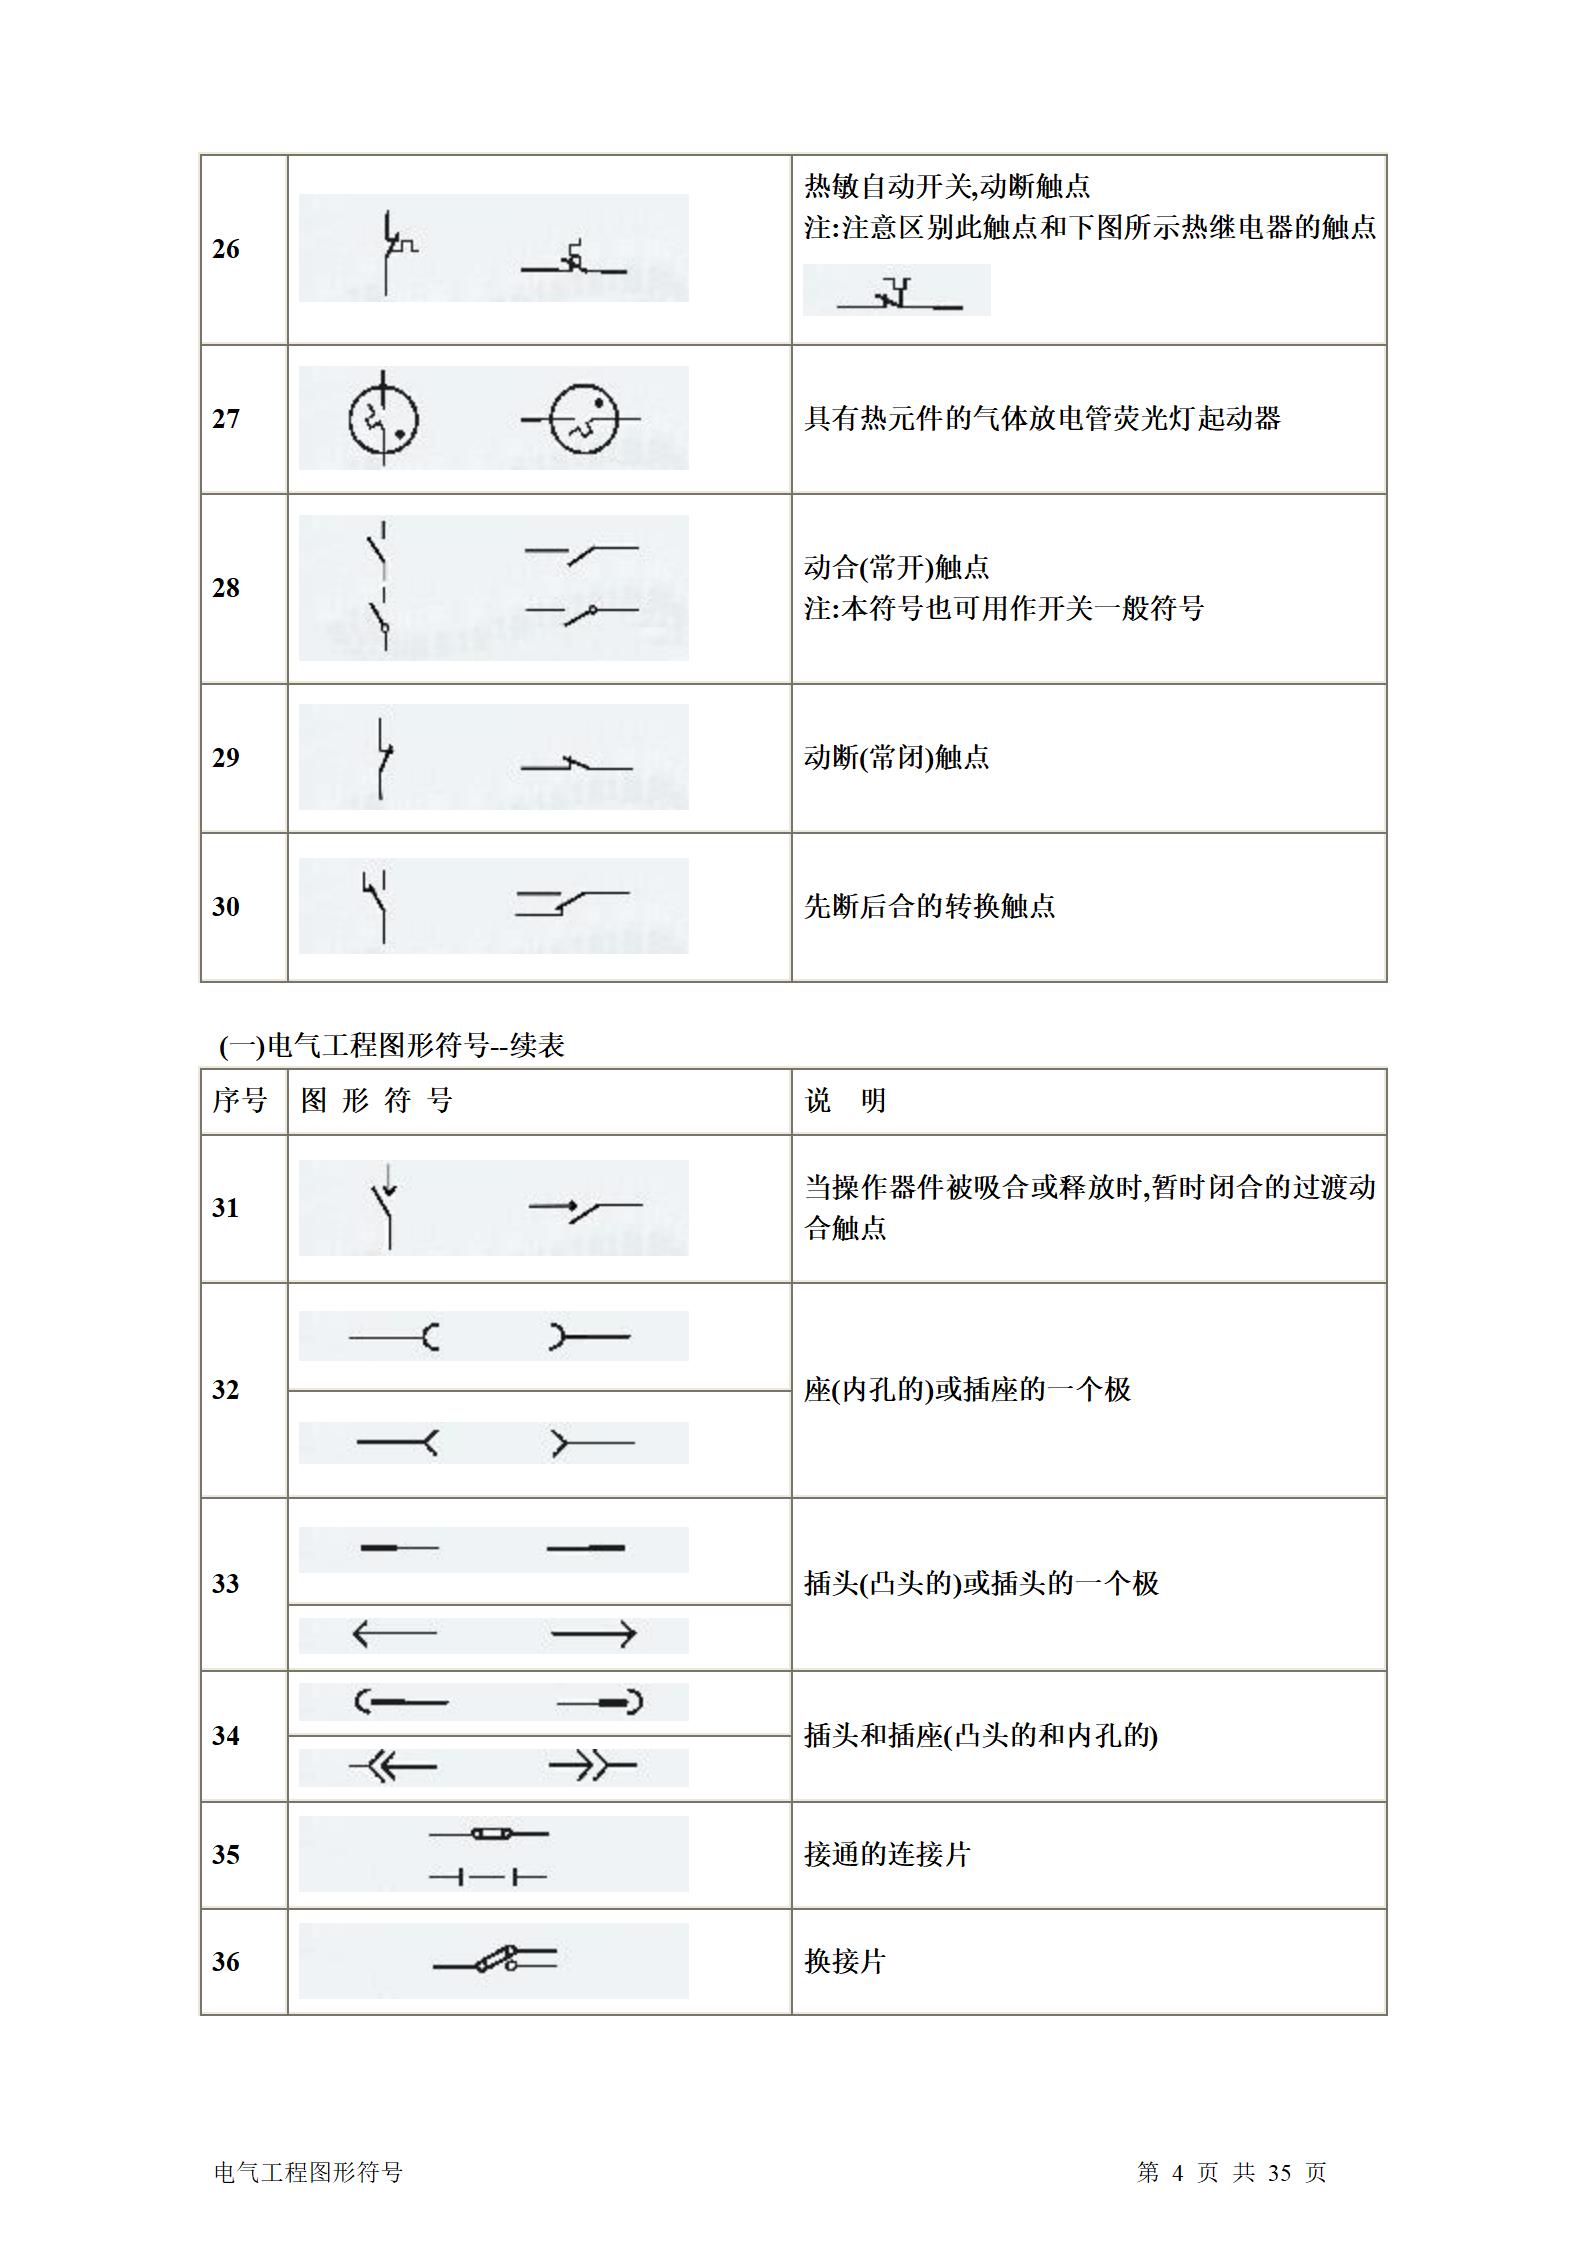 建筑电气、水暖、通风工程图形符号大全word版插图(4)